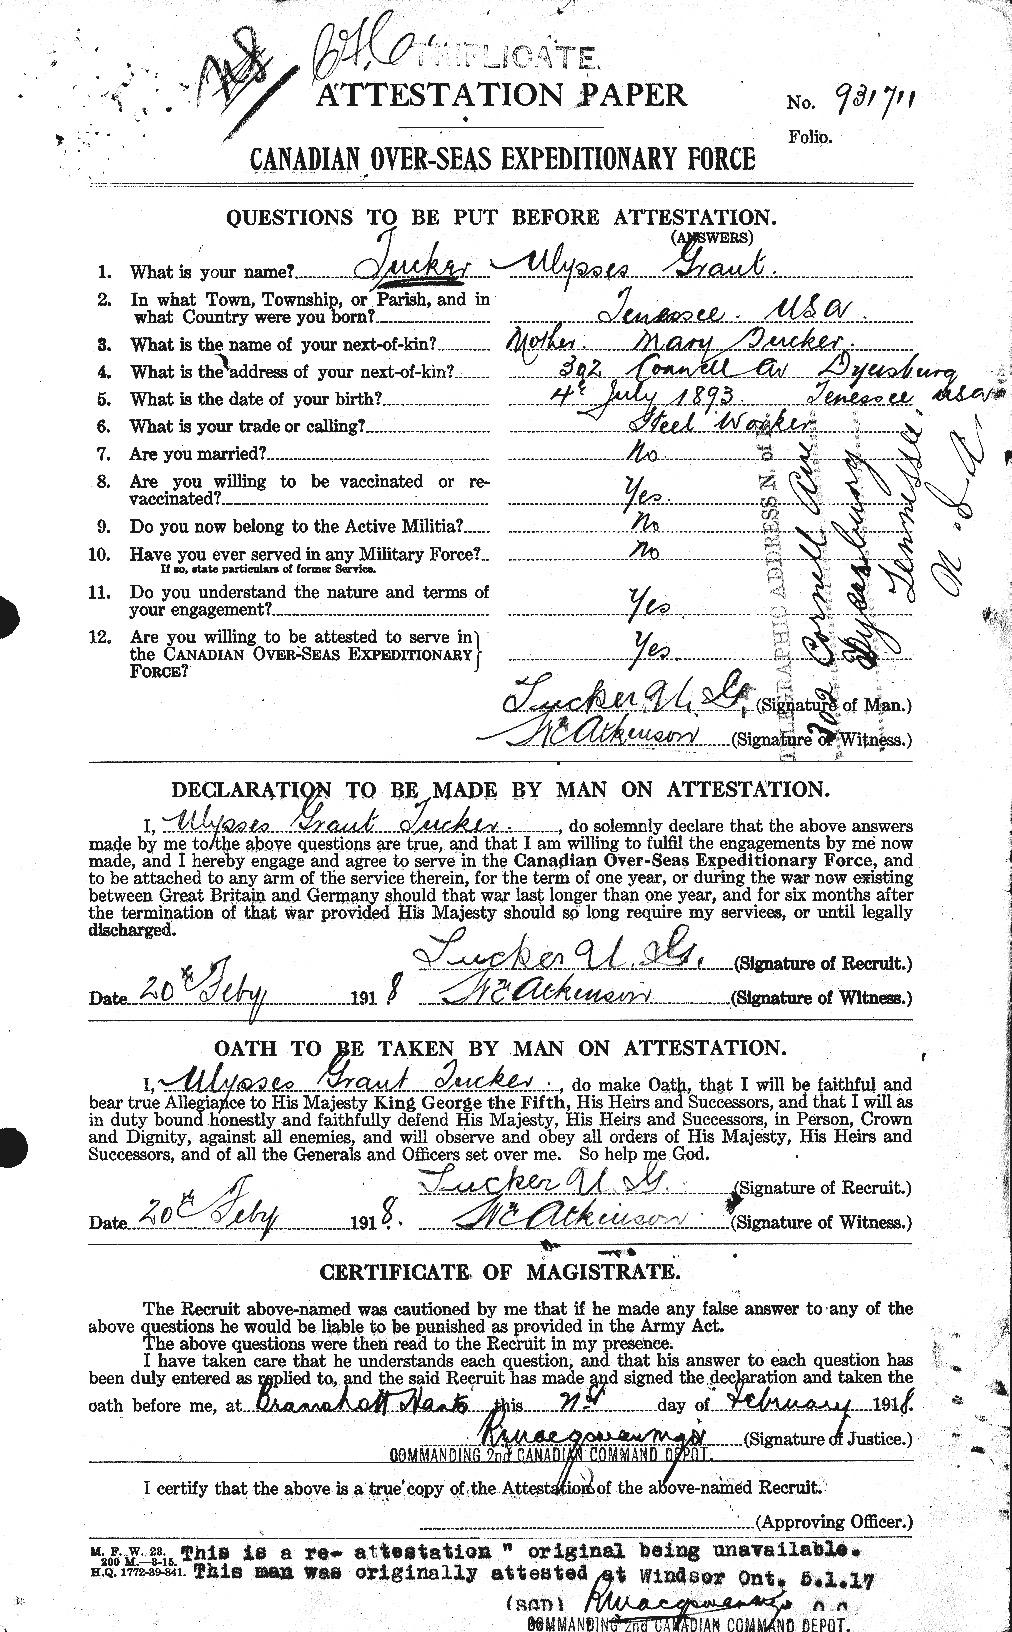 Dossiers du Personnel de la Première Guerre mondiale - CEC 642845a